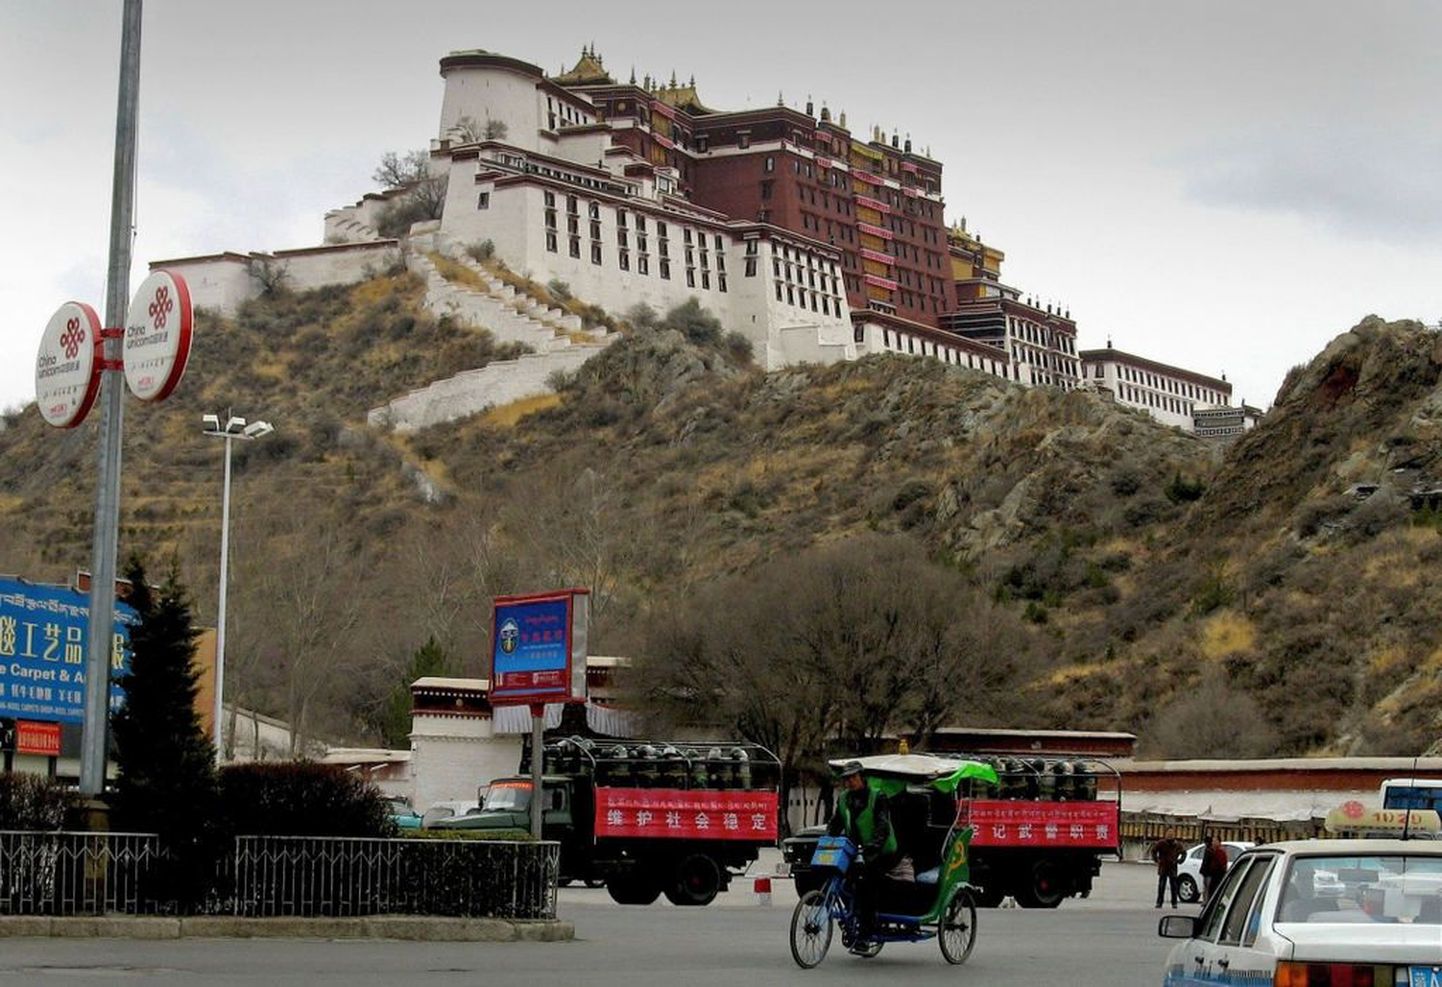 Hiina sõdurid istumas veokites Potala palee ees Lhasas..